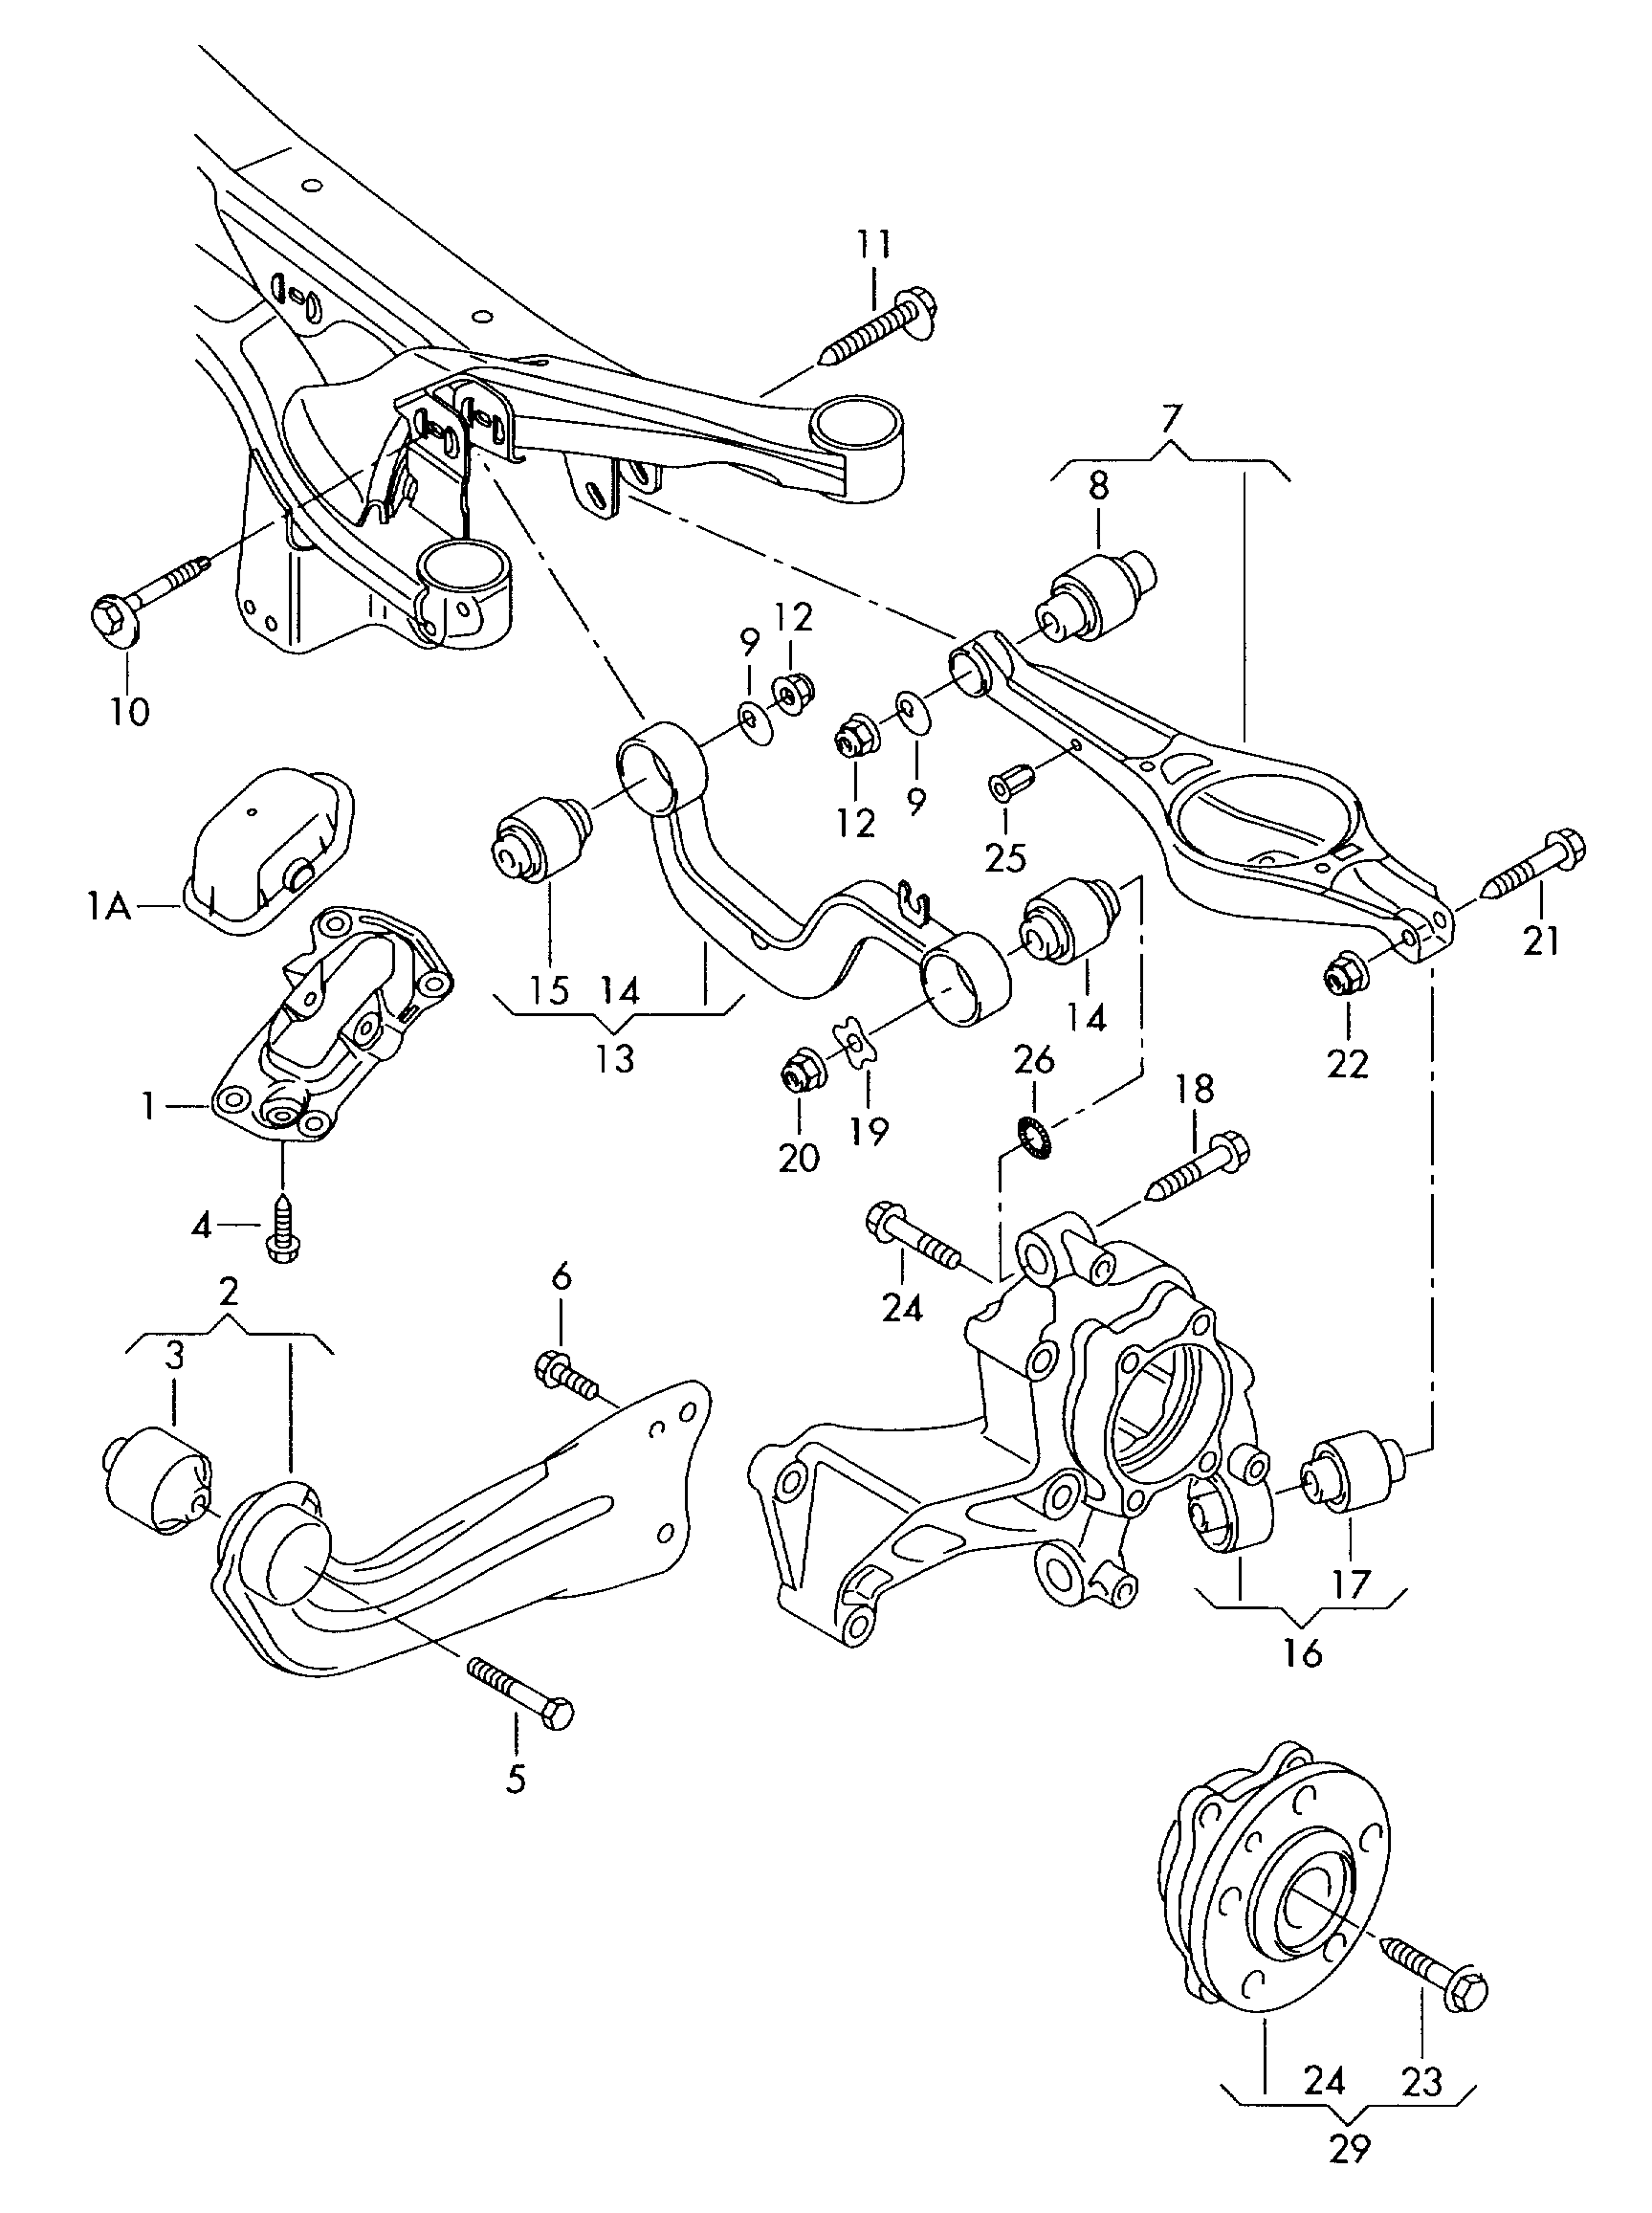 Детали передней подвески: рычаги, стабилизатор, амортизаторы, втулки, сайлентблоки Туарег